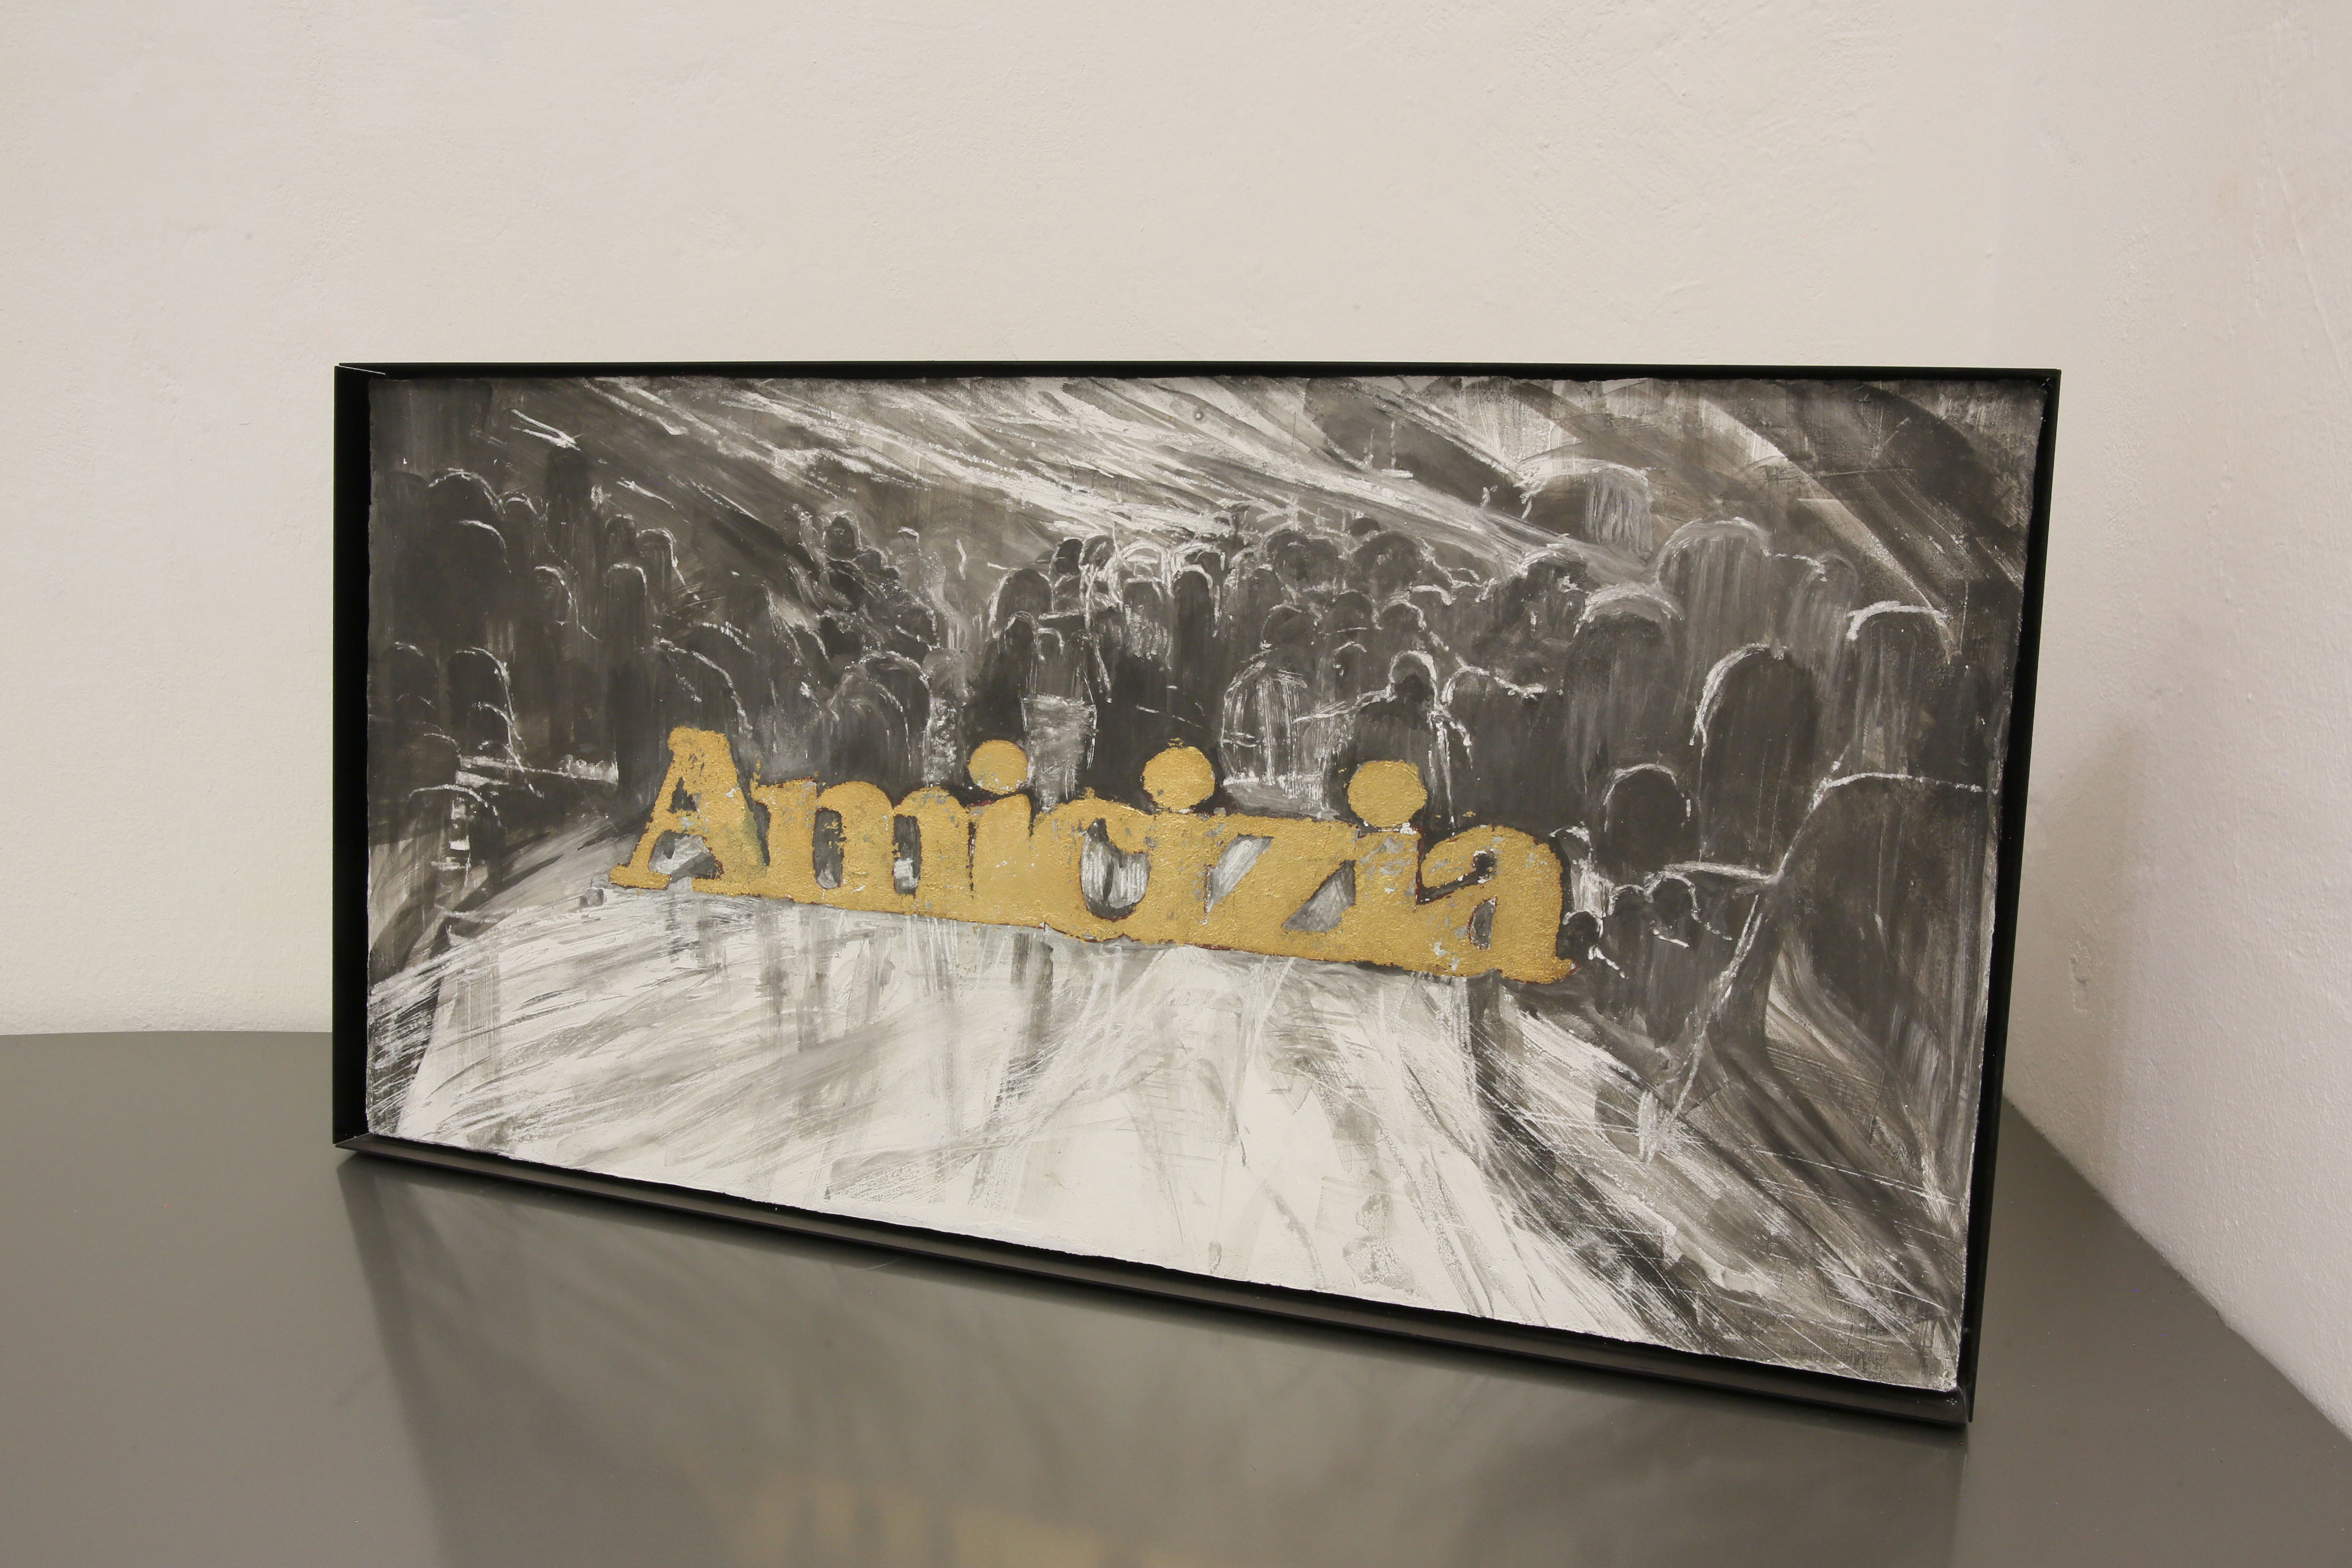 “Amicizia”
Affresco et feuille d'or sur bois
52,5 x 104 x 2,5 cm
Cadre en aluminium anodisé 2019